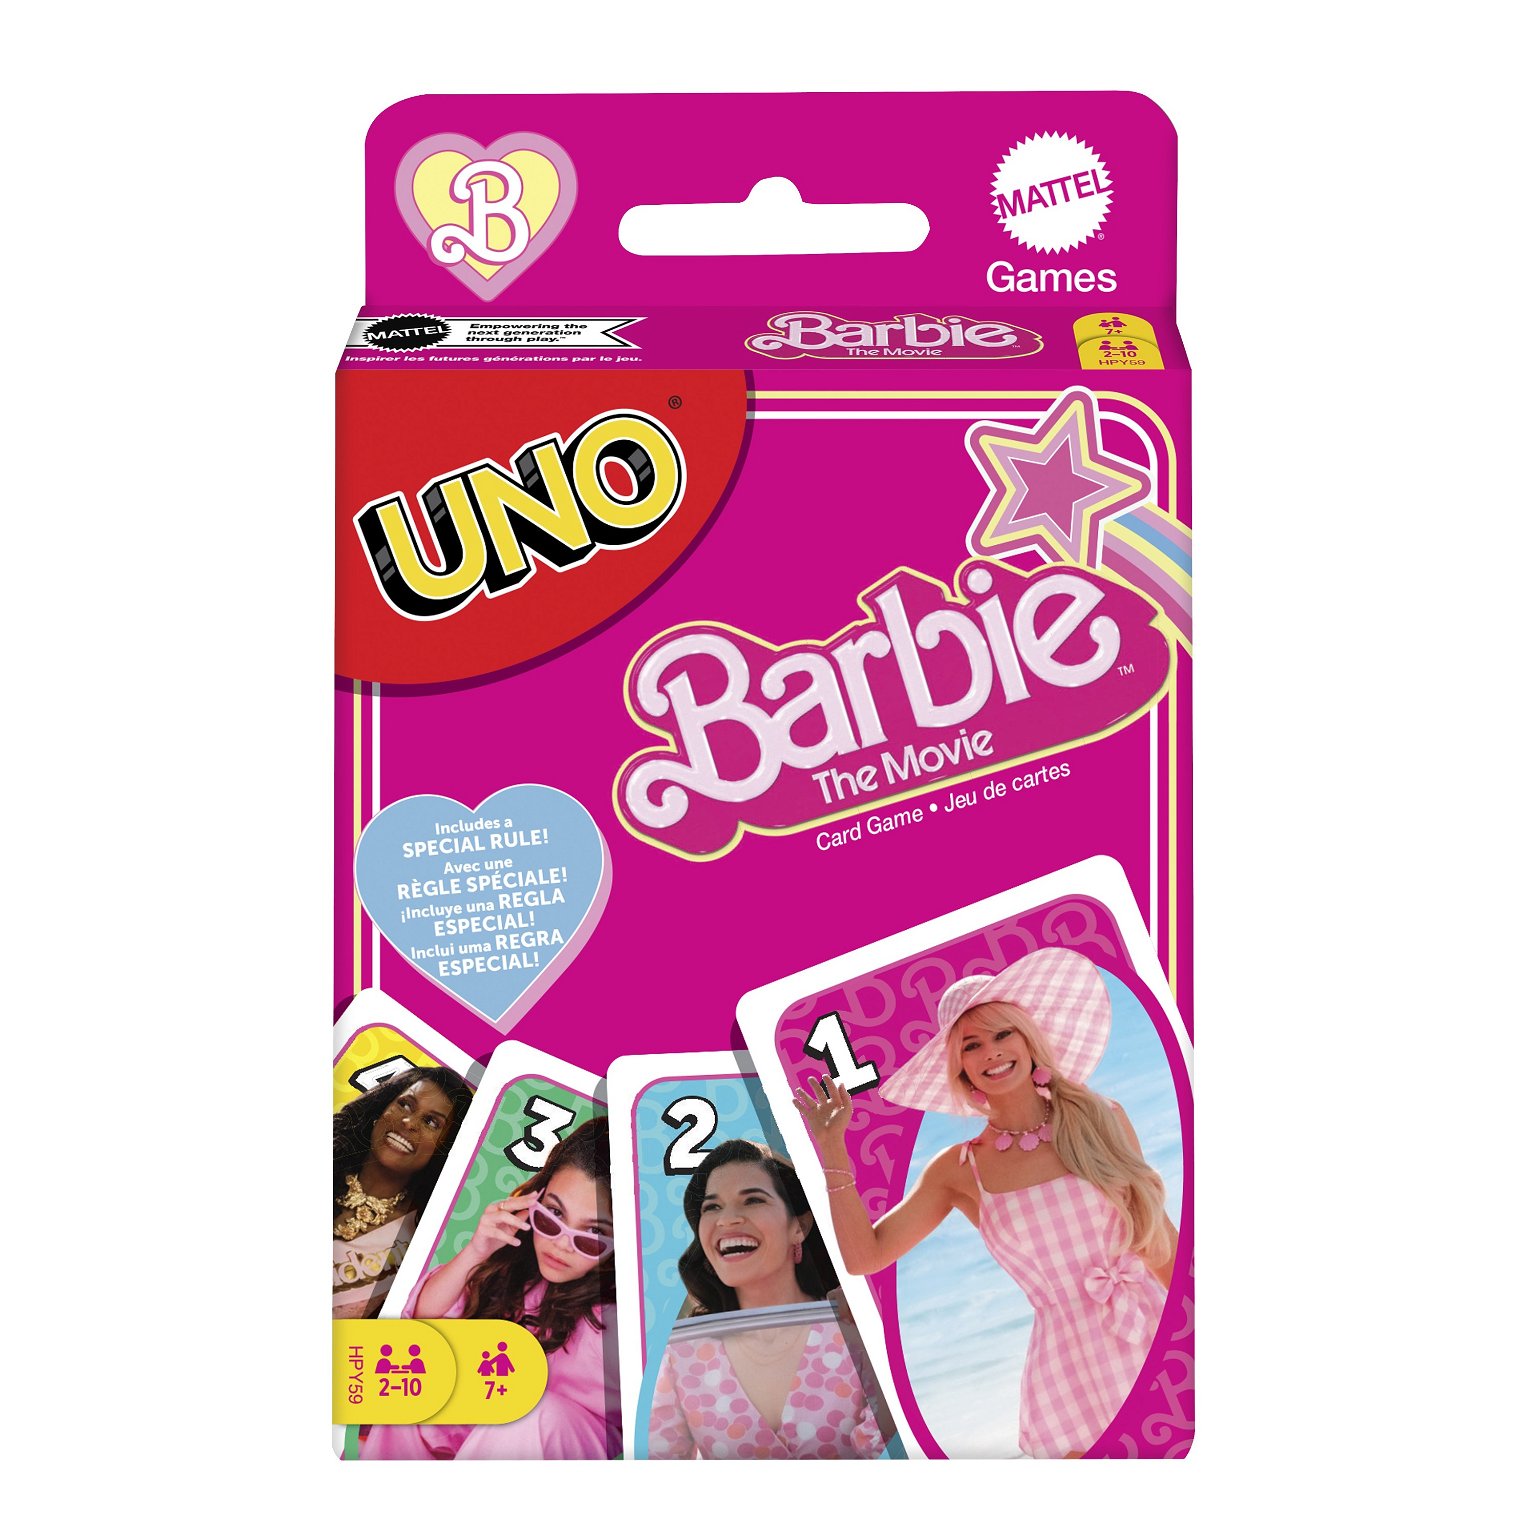 UNO kortos „Barbie filmas“ - 1